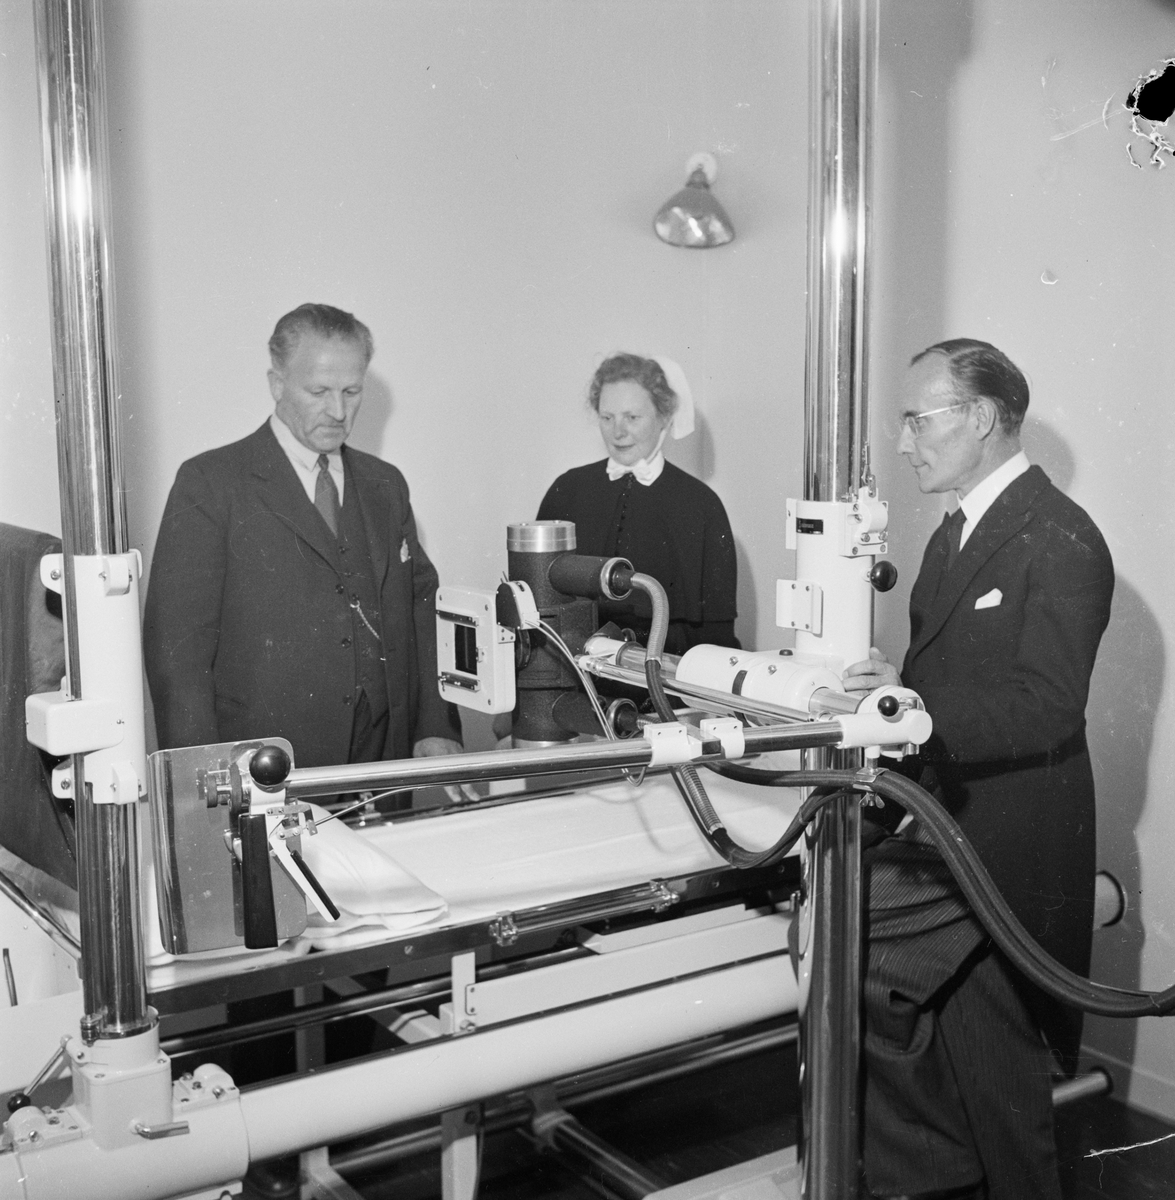 Invigning av sjukhuset, Tierp, Uppland 1948